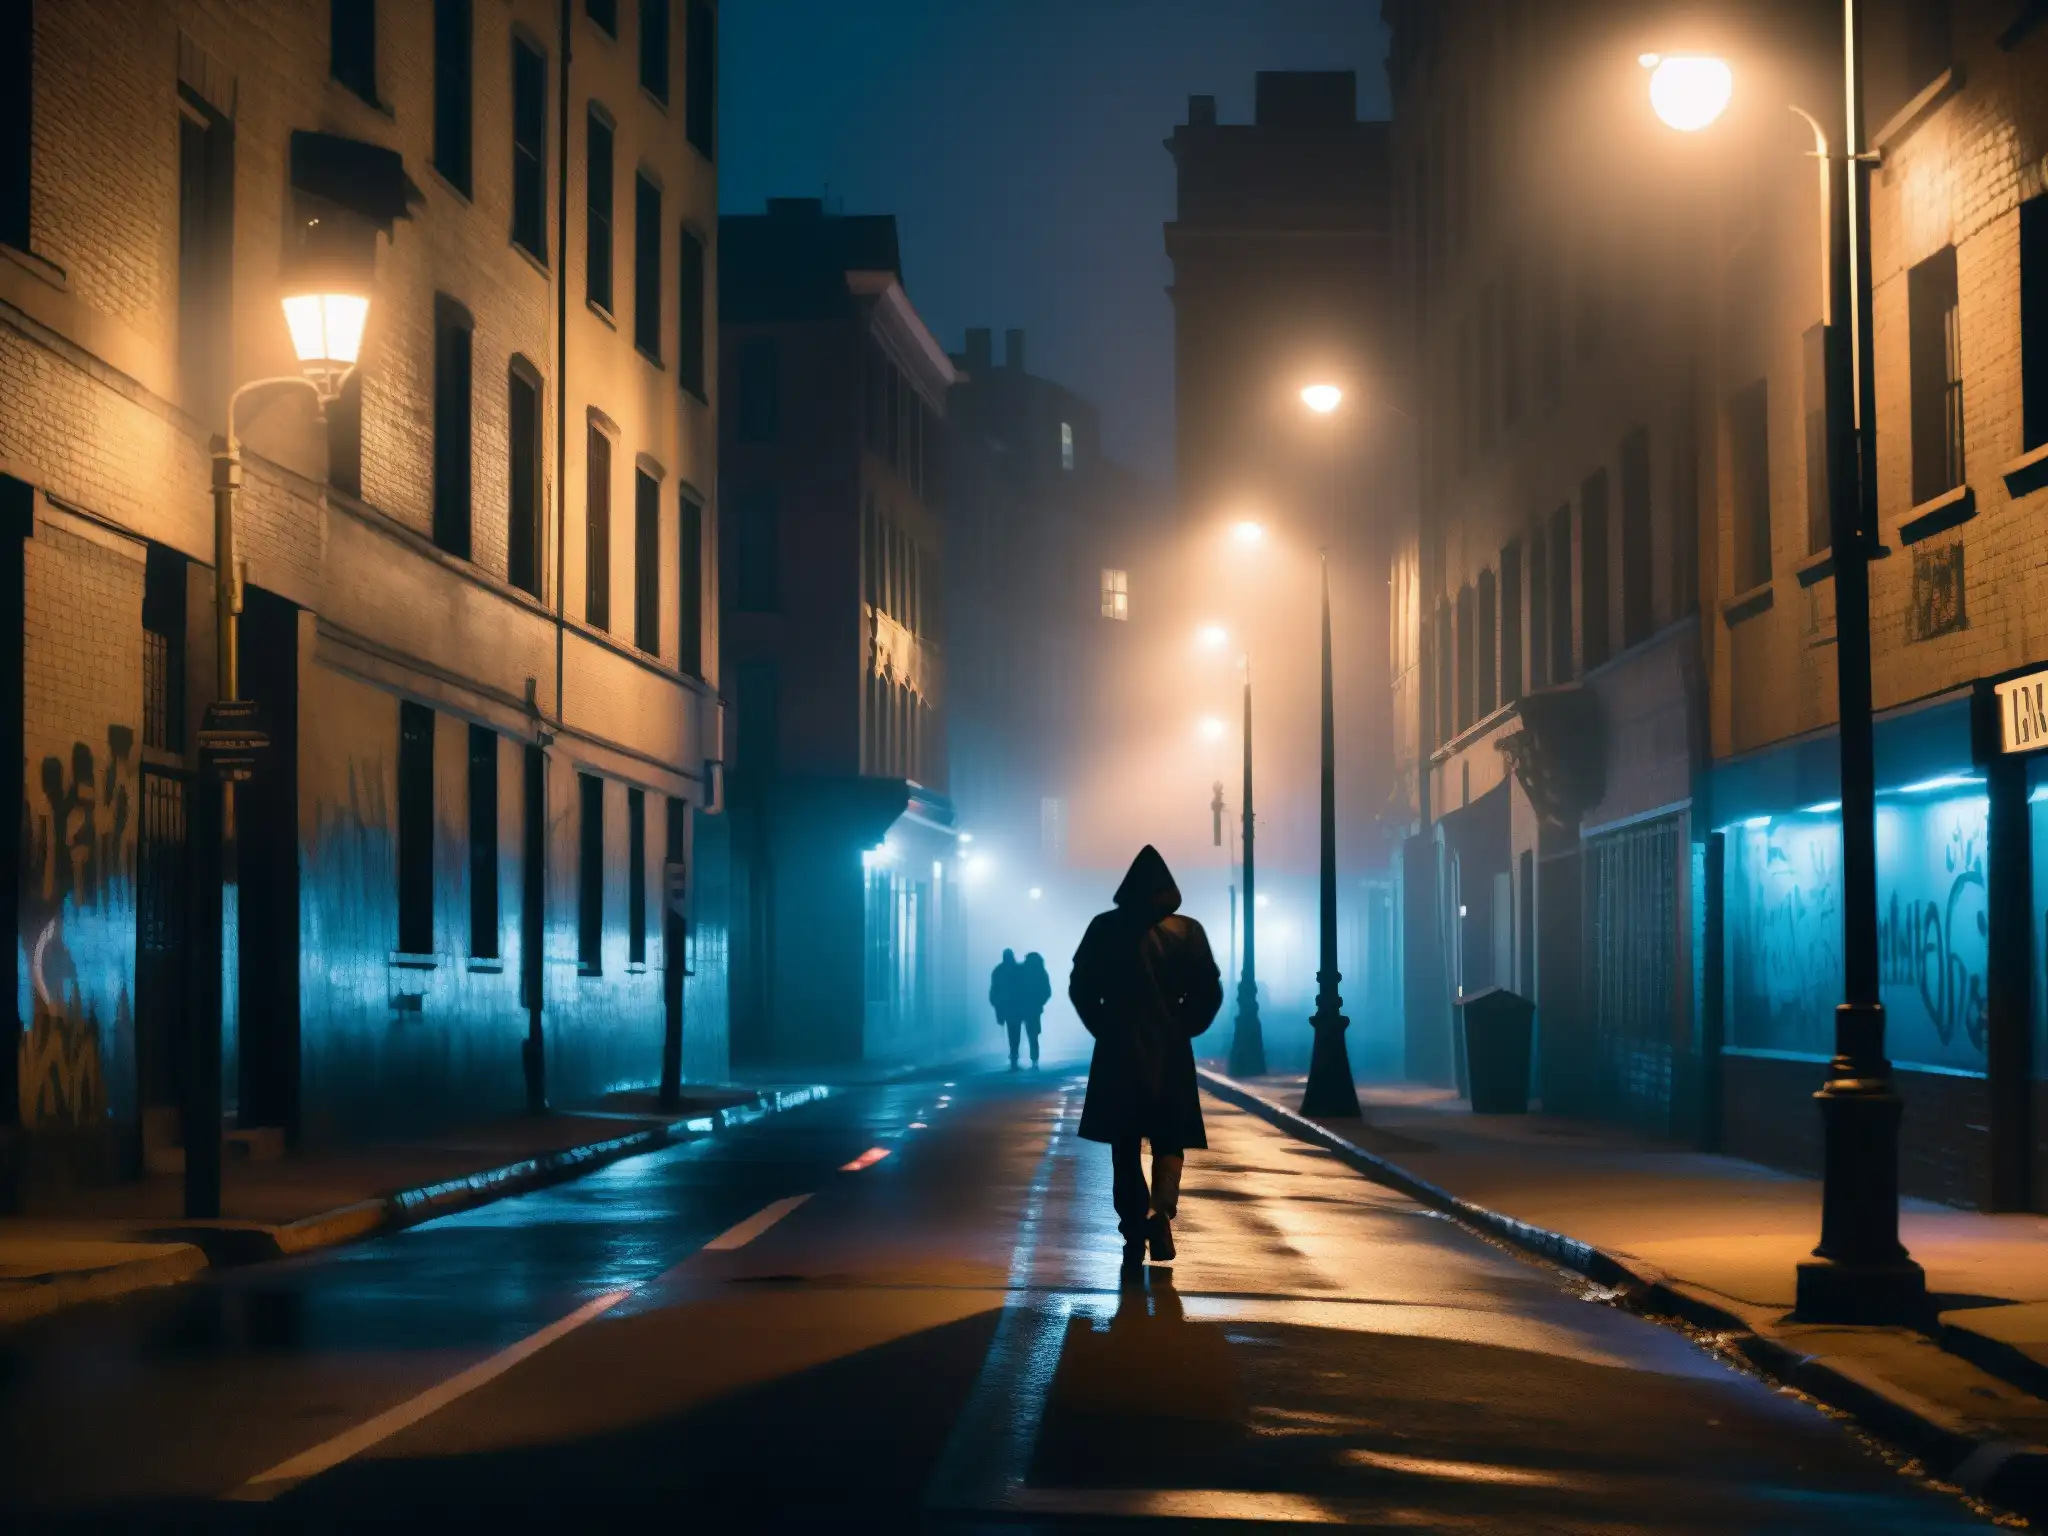 Una oscura calle de la ciudad de noche, con figuras sombrías y una atmósfera neblinosa